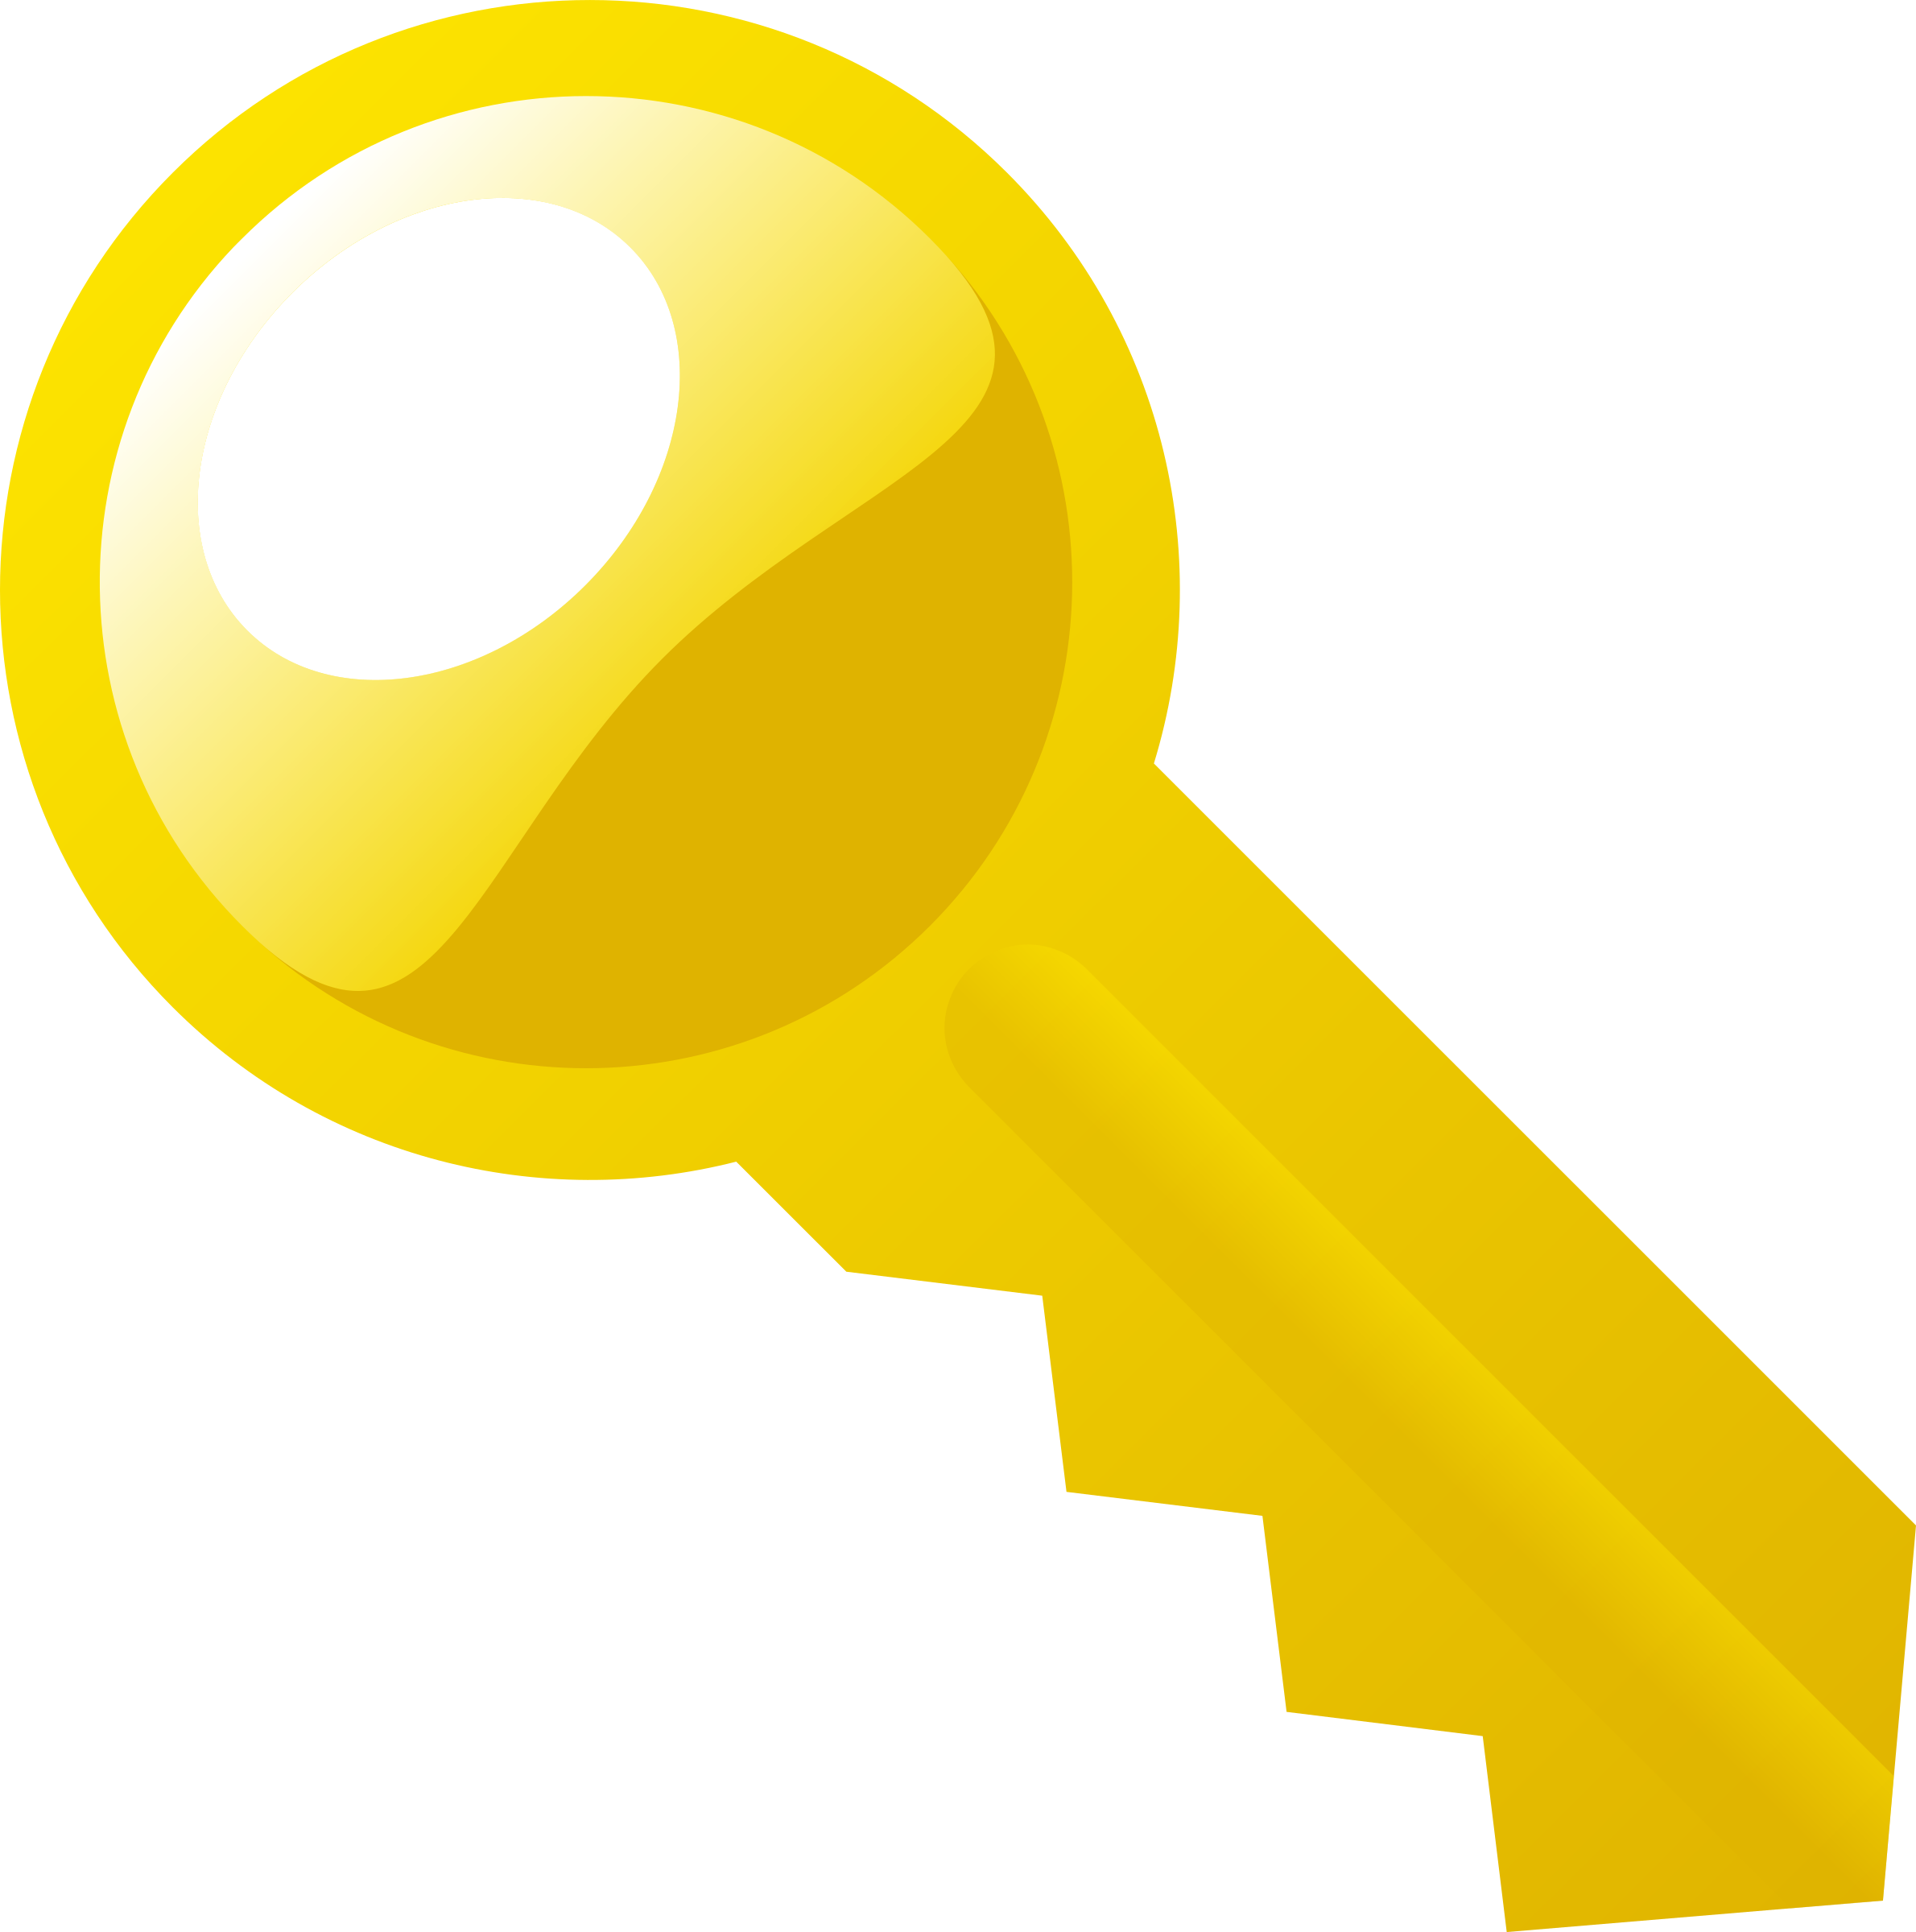 Ключ картинка. Ключ. Изображение ключа. Желтый ключ.